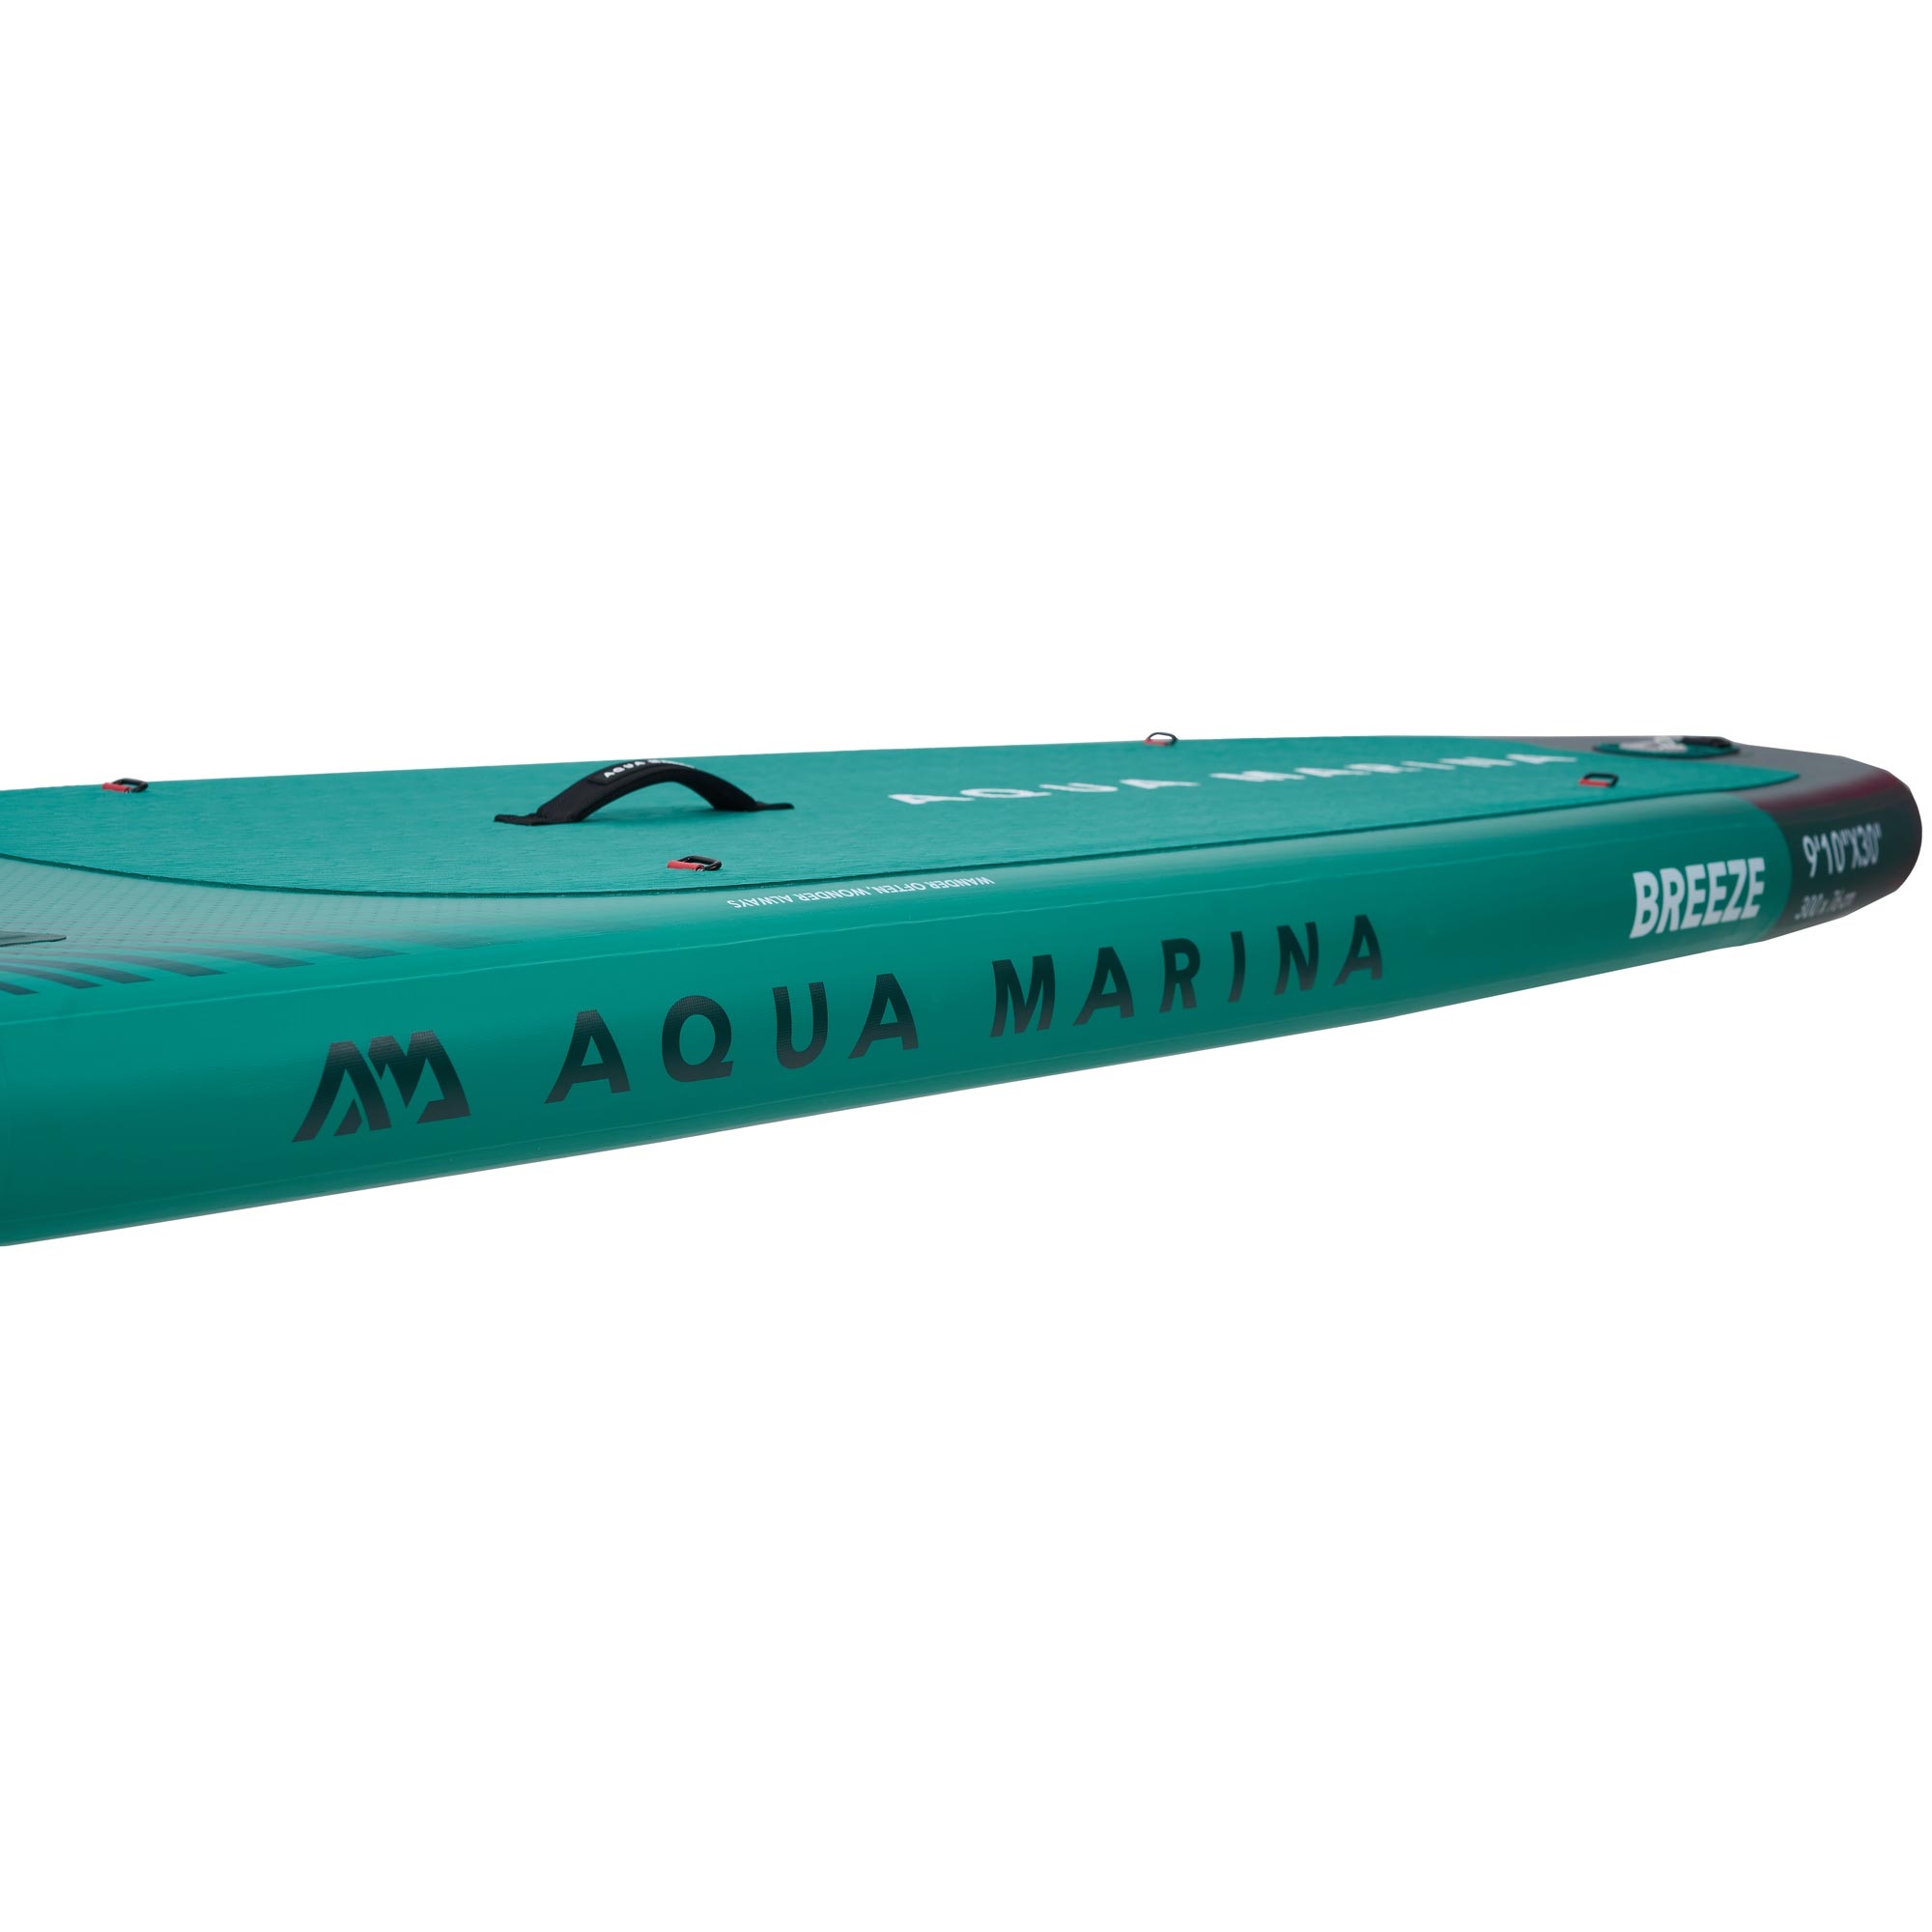 w23116-10-aqua-marina-sup-breeze